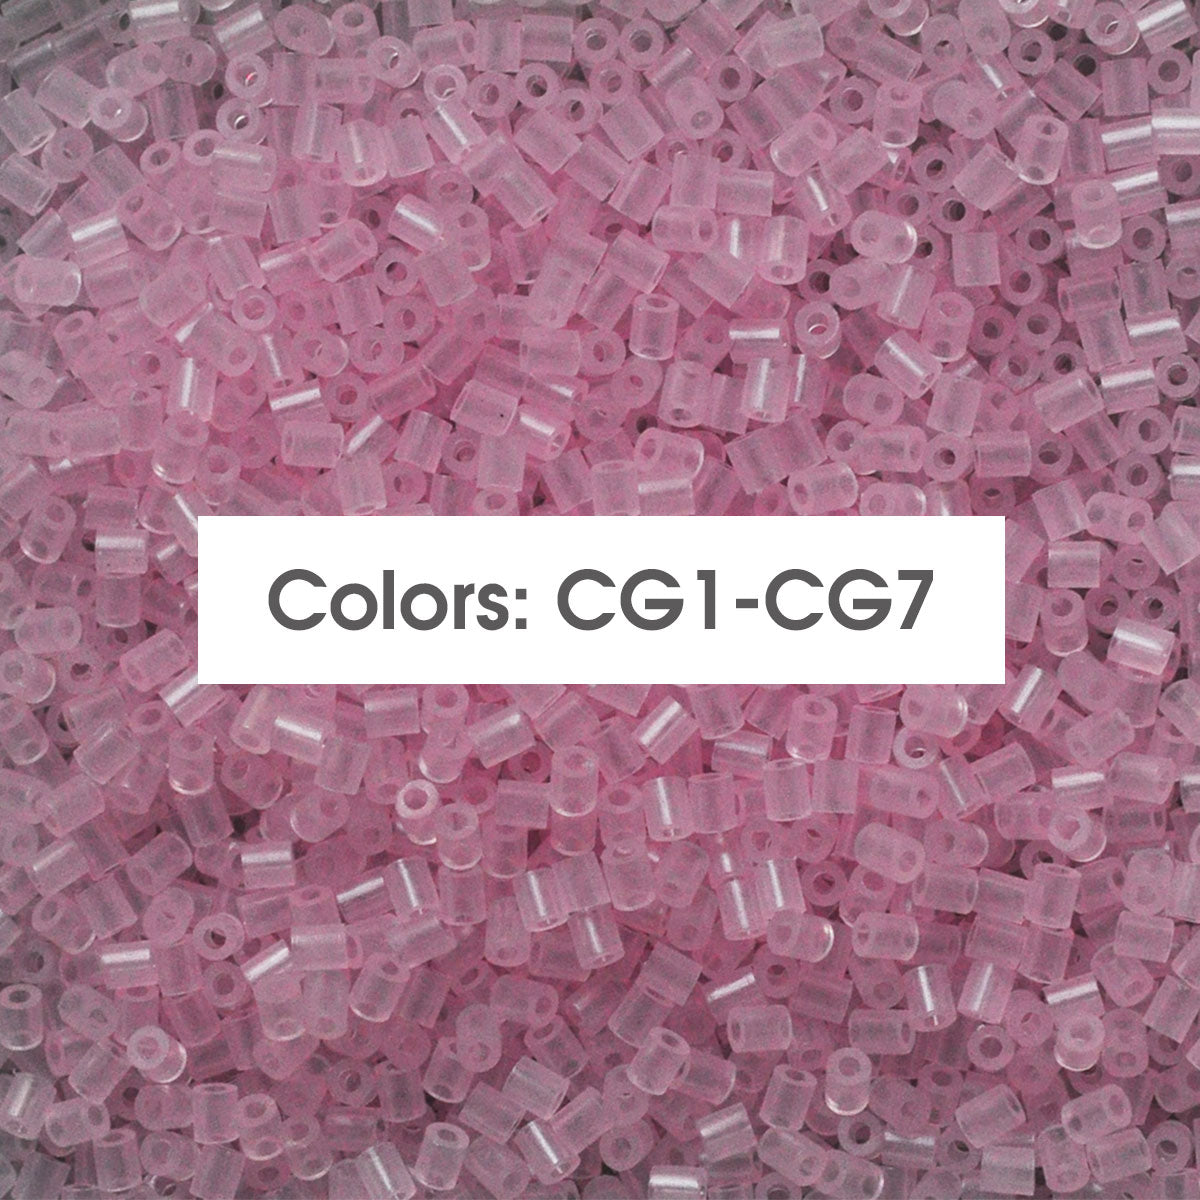 (CG1-CG7 gloed in donkere kleuren) C-500G in bulk